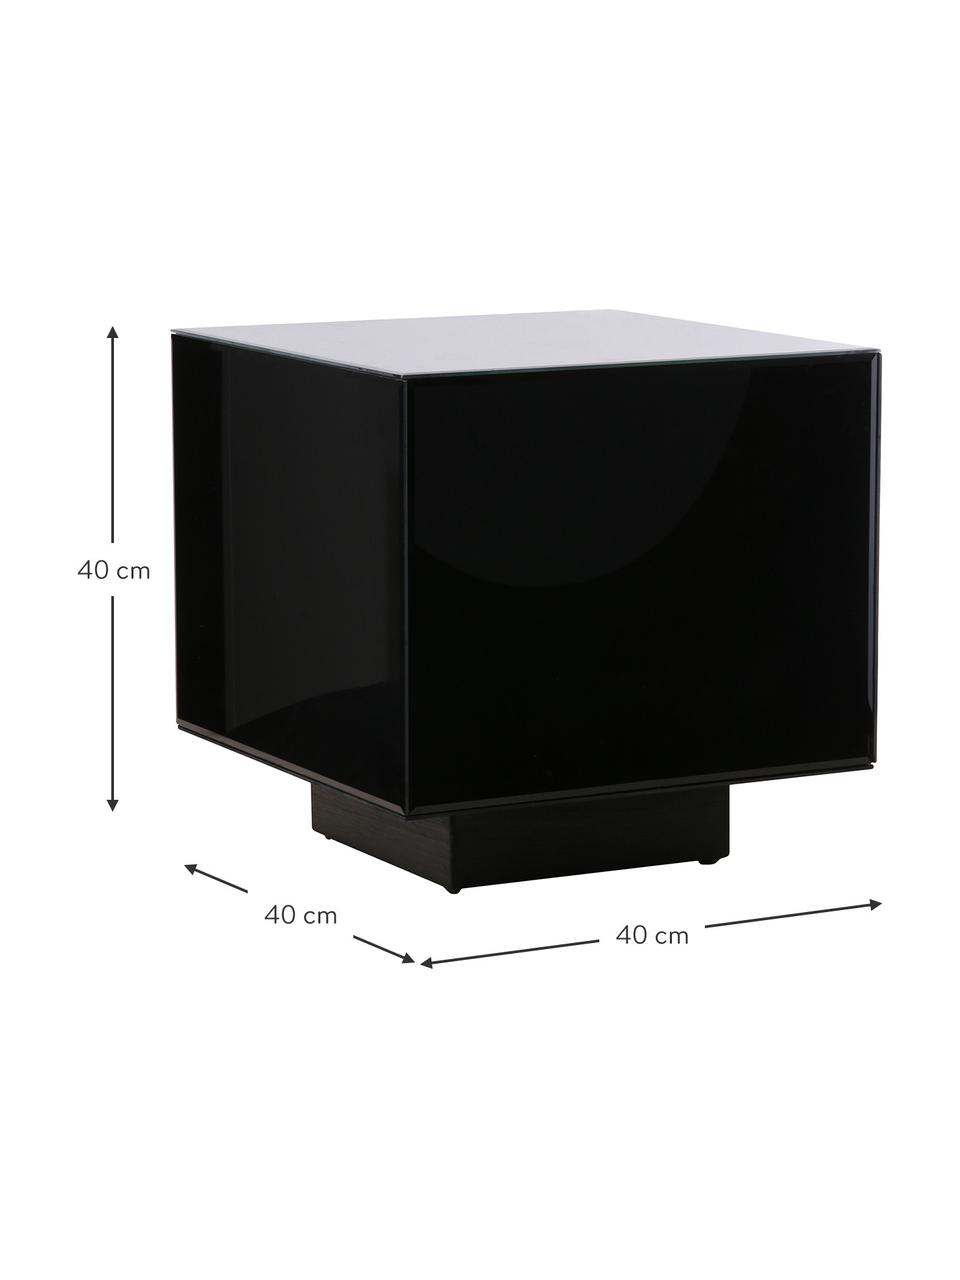 Glas-Beistelltisch Block mit Spiegel-Effekt in Schwarz, Korpus: Glas, Fuß: Kiefernholz, Mitteldichte, Schwarz, B 40 x H 40 cm